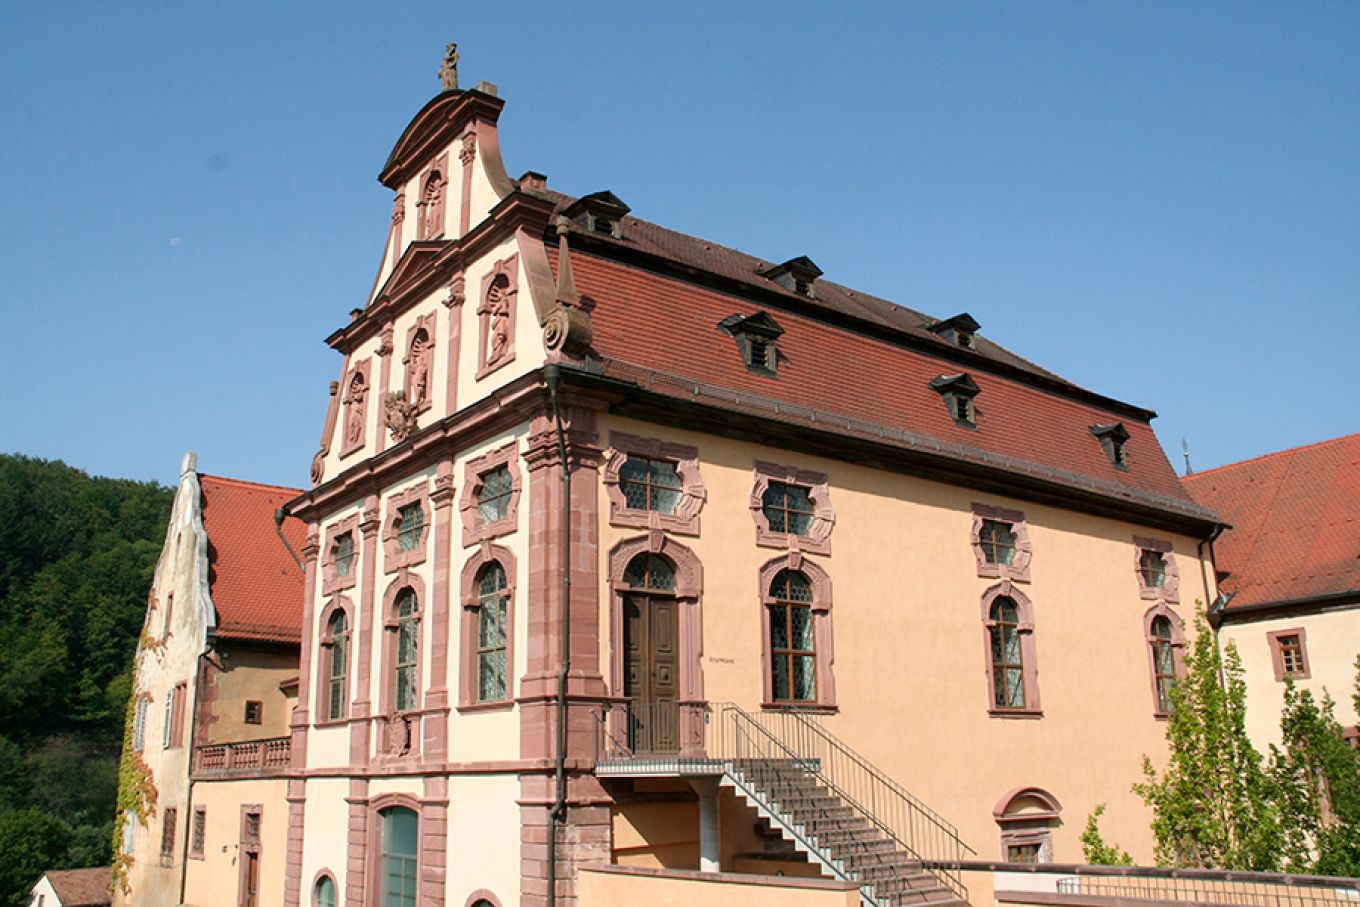 Kloster Bronnbach